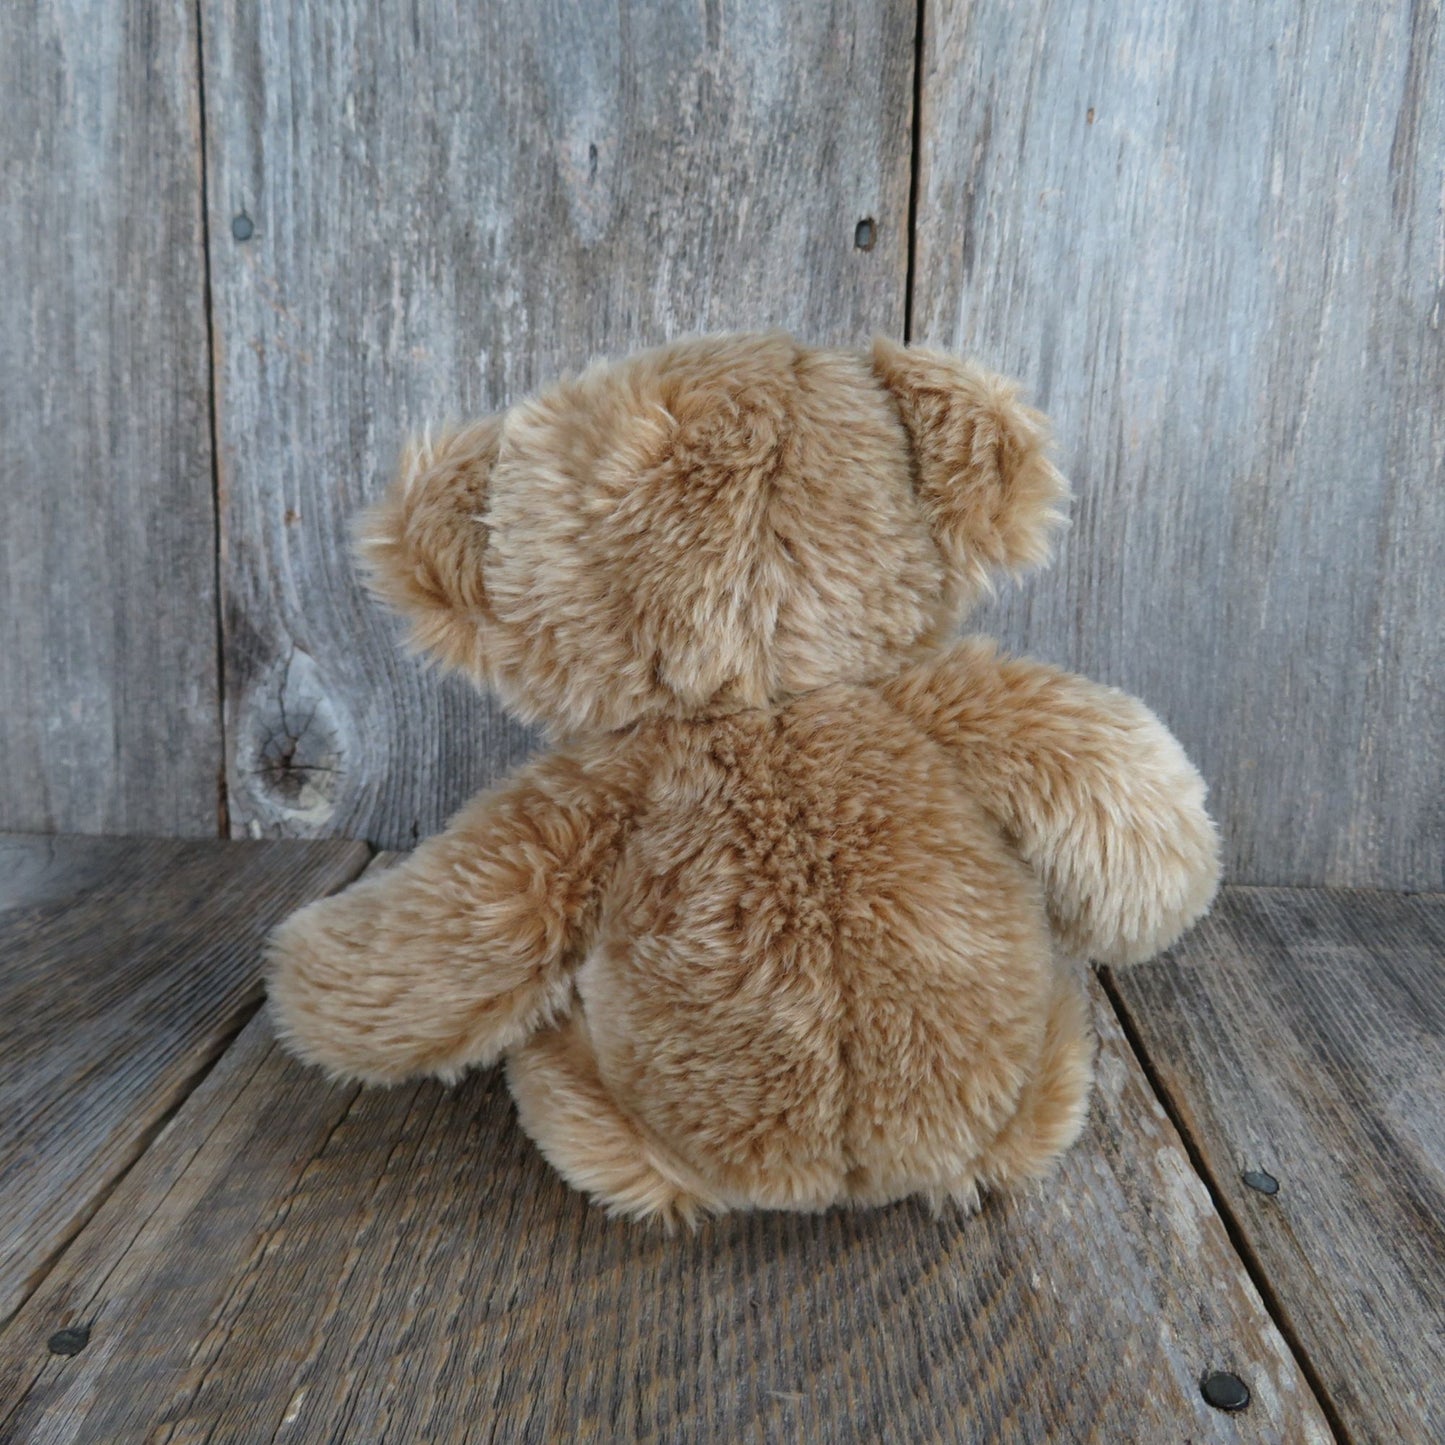 Vintage Teddy Bear Shaggy Plush Cute Floppy Aurora Stuffed Animal Stitched Nose Sad Grumpy